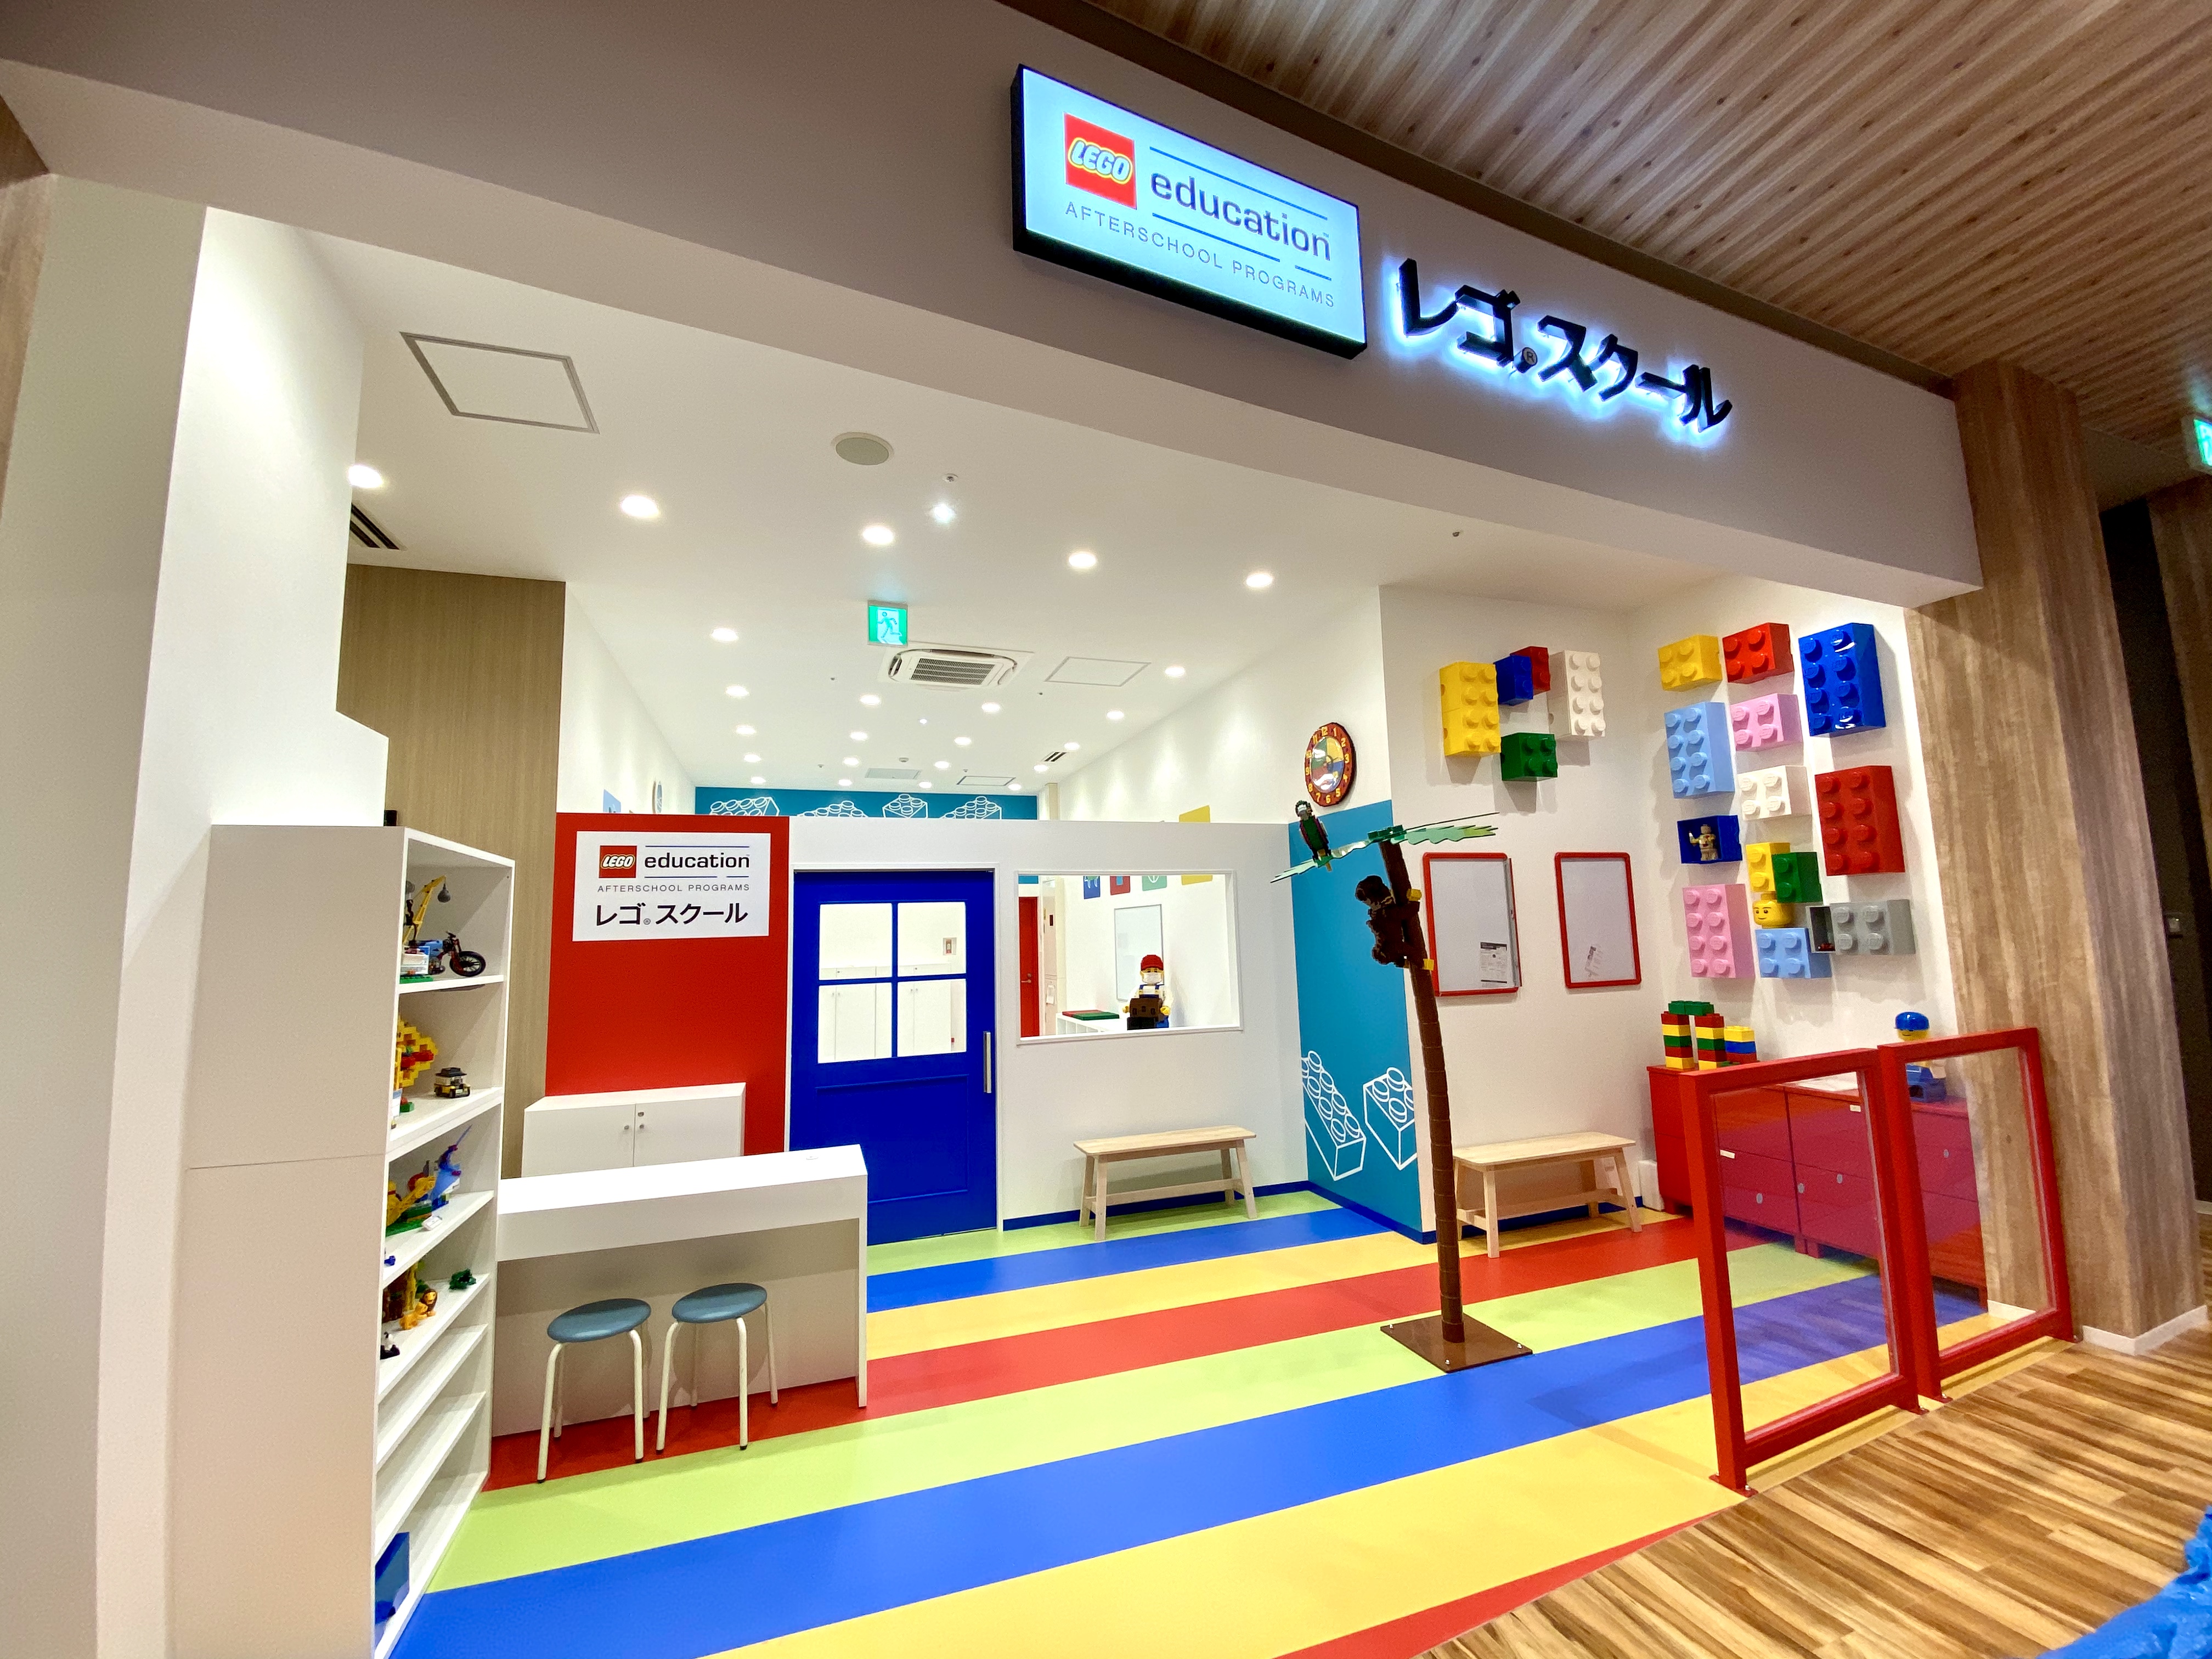 2020年9月にオープンの愛知県中部エリア最大級となる大型商業施設『三井ショッピングパーク ららぽーと愛知東郷』にオープンしました。体験レッスンにぜひお越しください。